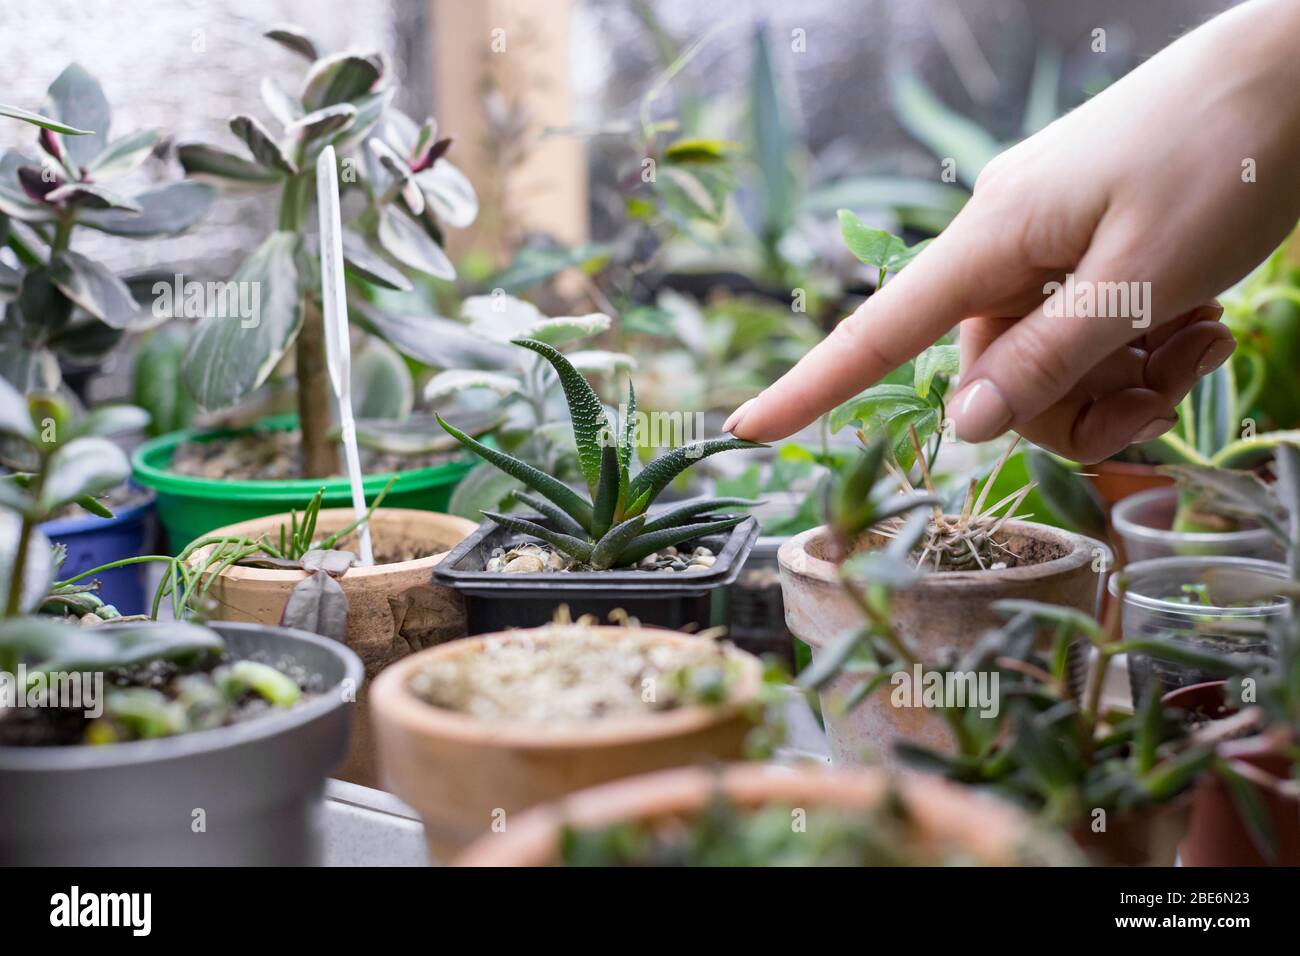 Gärtnerin berührt und zeigt Zeigefinger auf Blättern von kleinen haworthia im Topf, eingemachtes Sukkulent auf Hintergrund, selektiver Fokus. Gartenarbeit, Fr. Stockfoto